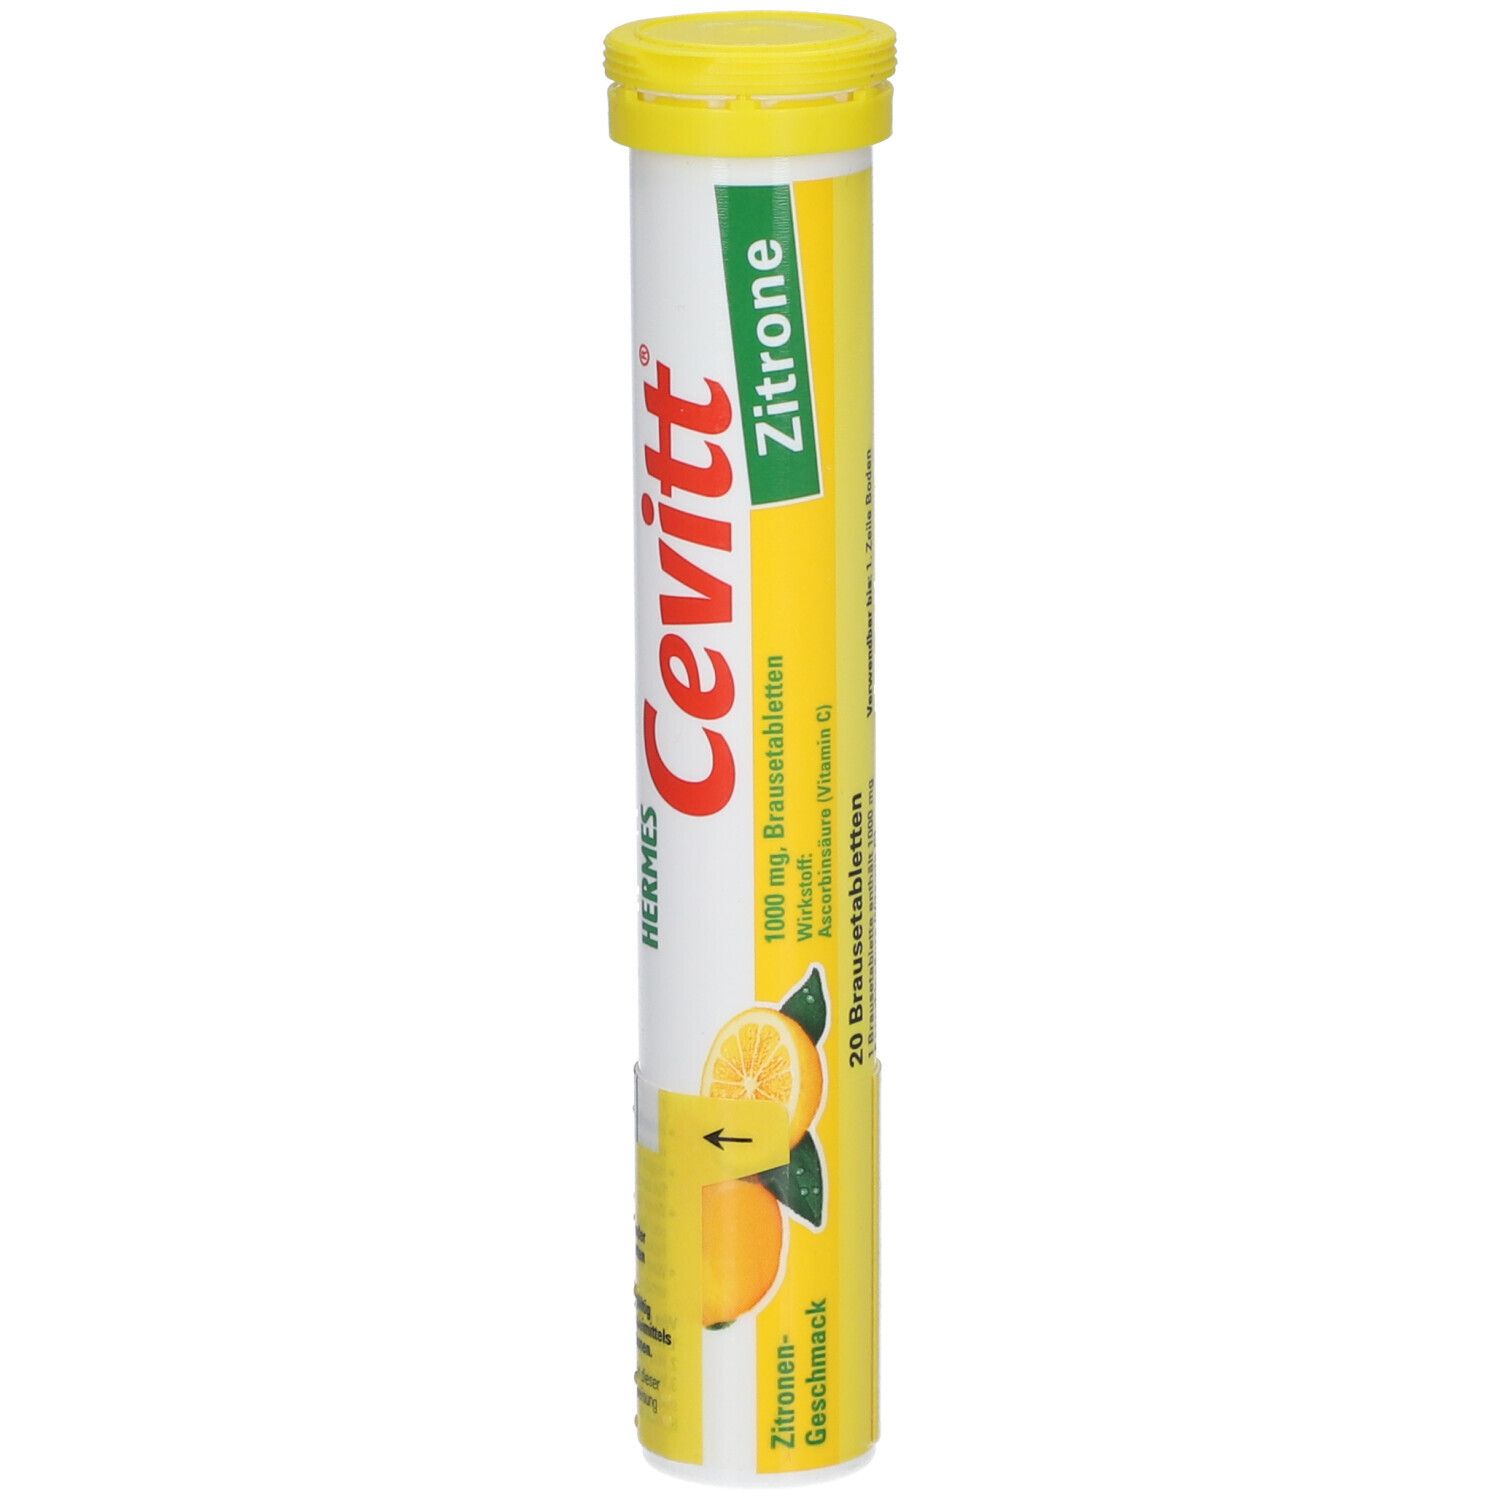 Cevitt® Brausetabletten Zitrone